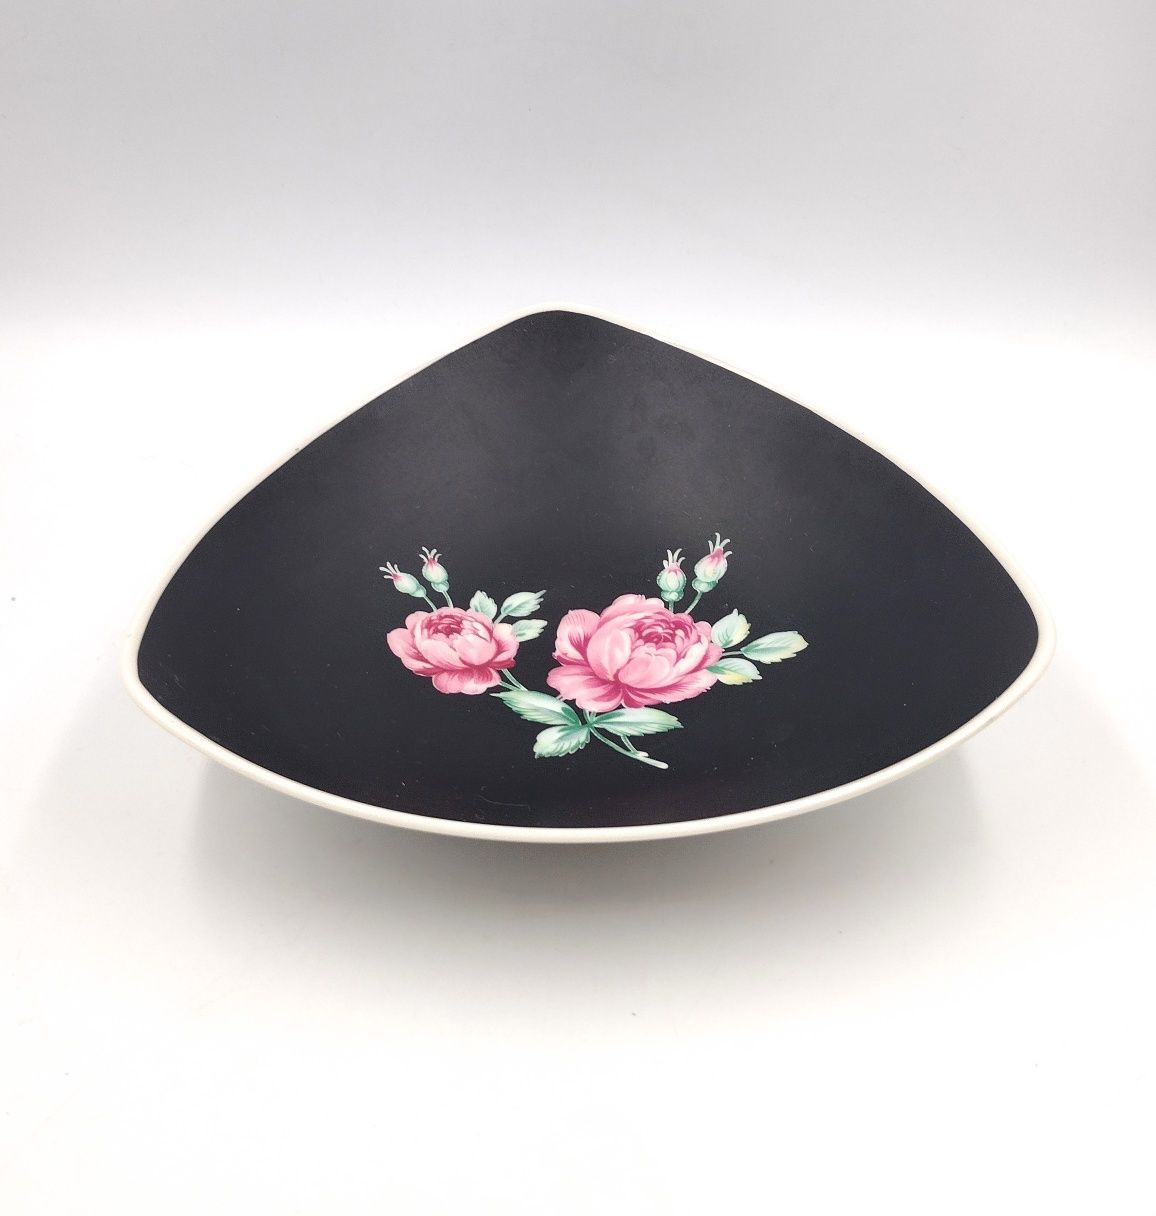 Misa porcelana czarna róża kwiaty retro design antyk vintage bukiet